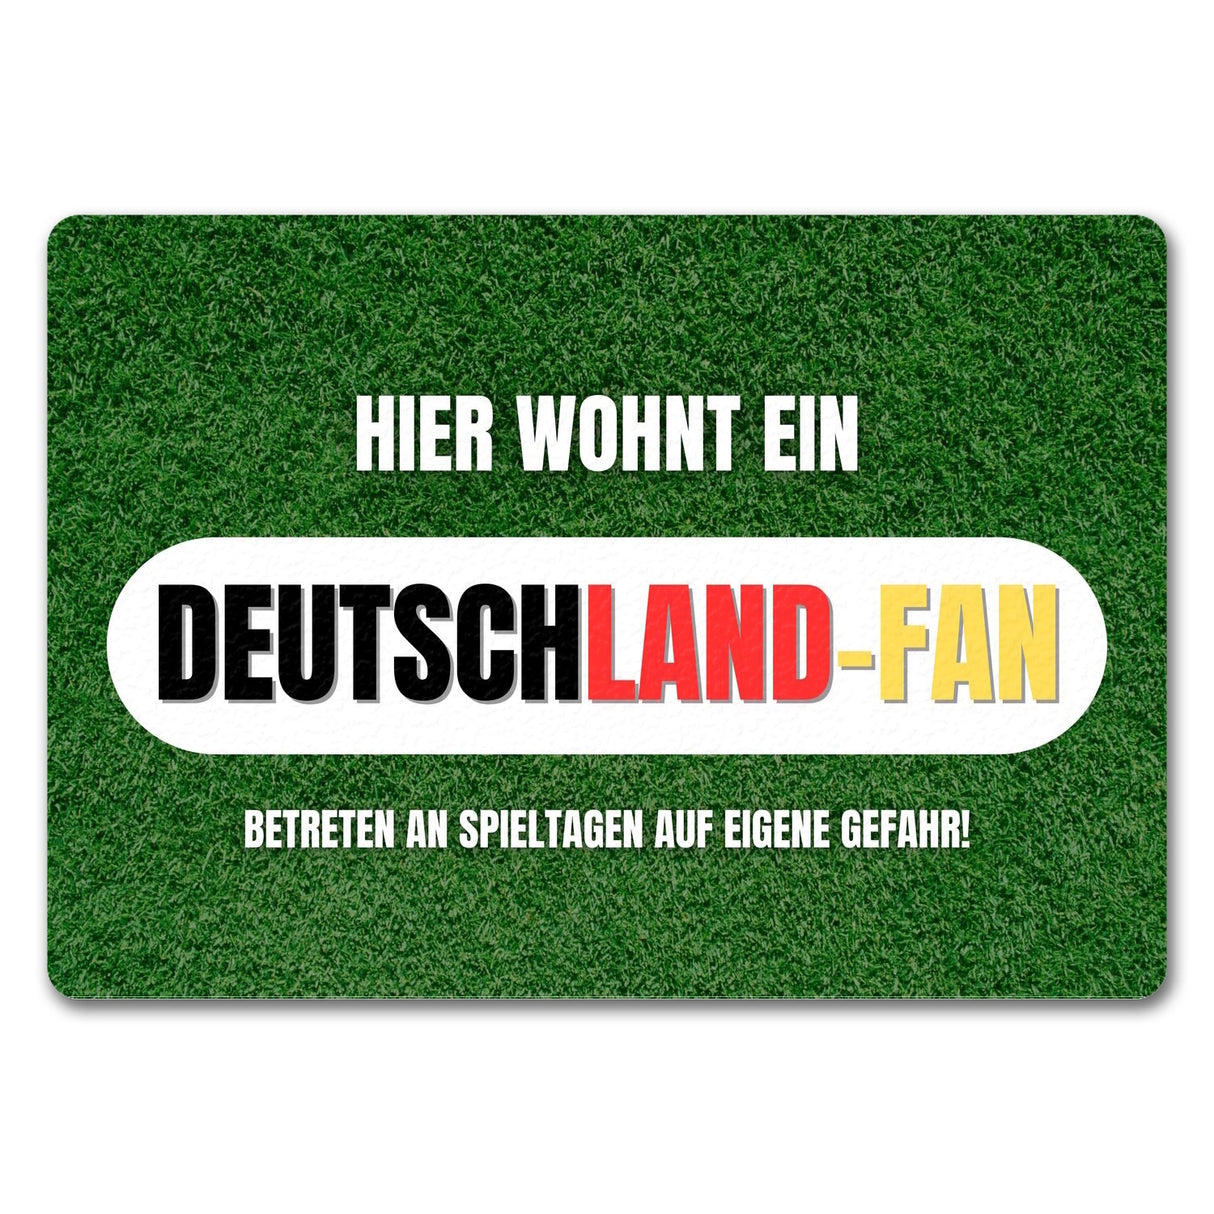 Hier wohnt ein Deutschland-Fan Fußmatte in 35x50 cm ohne Rand mit Spruch Betreten auf eigene Gefahr